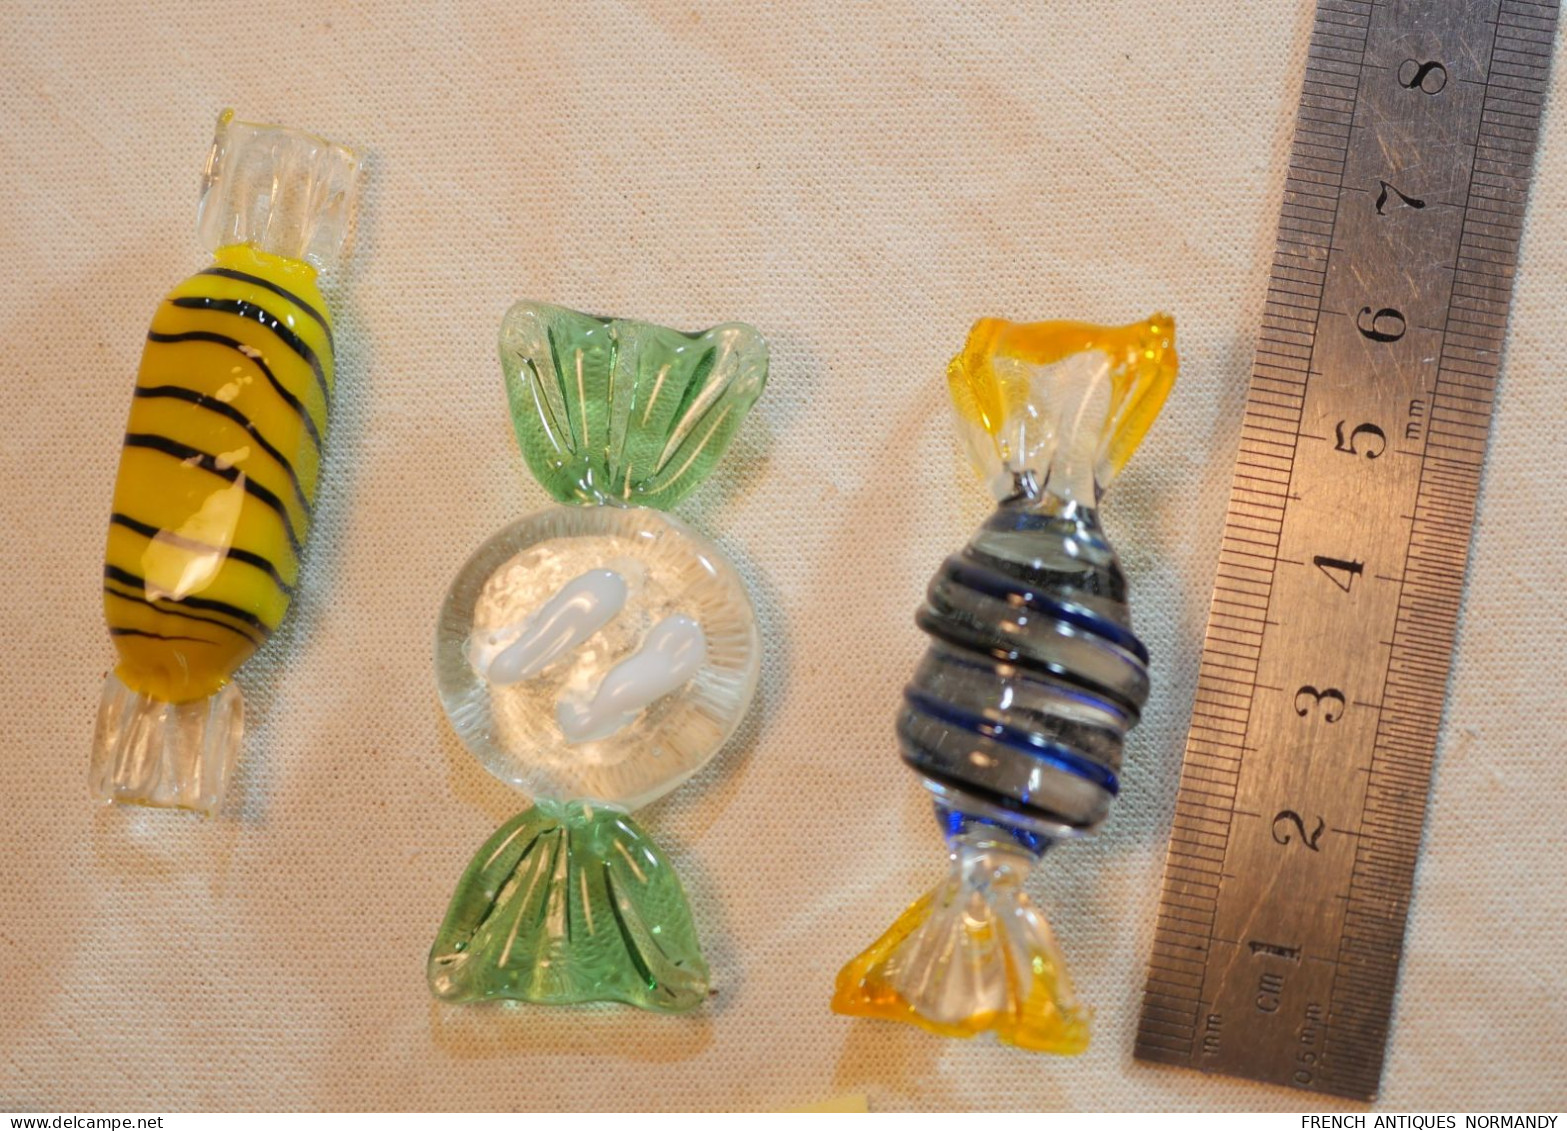 Lot de 7 bonbons Murano en verre soufflé et torsadé - ref BX24MUR002